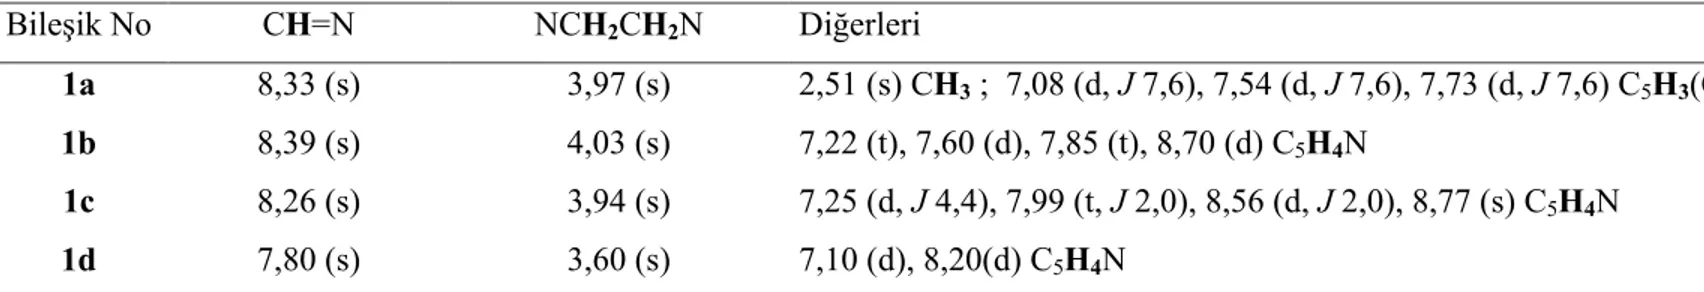 Çizelge 3.2 Schiff bazlarına ait  1 H NMR verileri  a, b Bileşik No  CH=N  NCH 2 CH 2 N  Diğerleri  1a  8,33 (s)  3,97 (s)  2,51 (s) CH 3  ;  7,08 (d, J 7,6), 7,54 (d, J 7,6), 7,73 (d, J 7,6) C5H3 (CH3)N  1b  8,39 (s)  4,03 (s)  7,22 (t), 7,60 (d), 7,85 (t